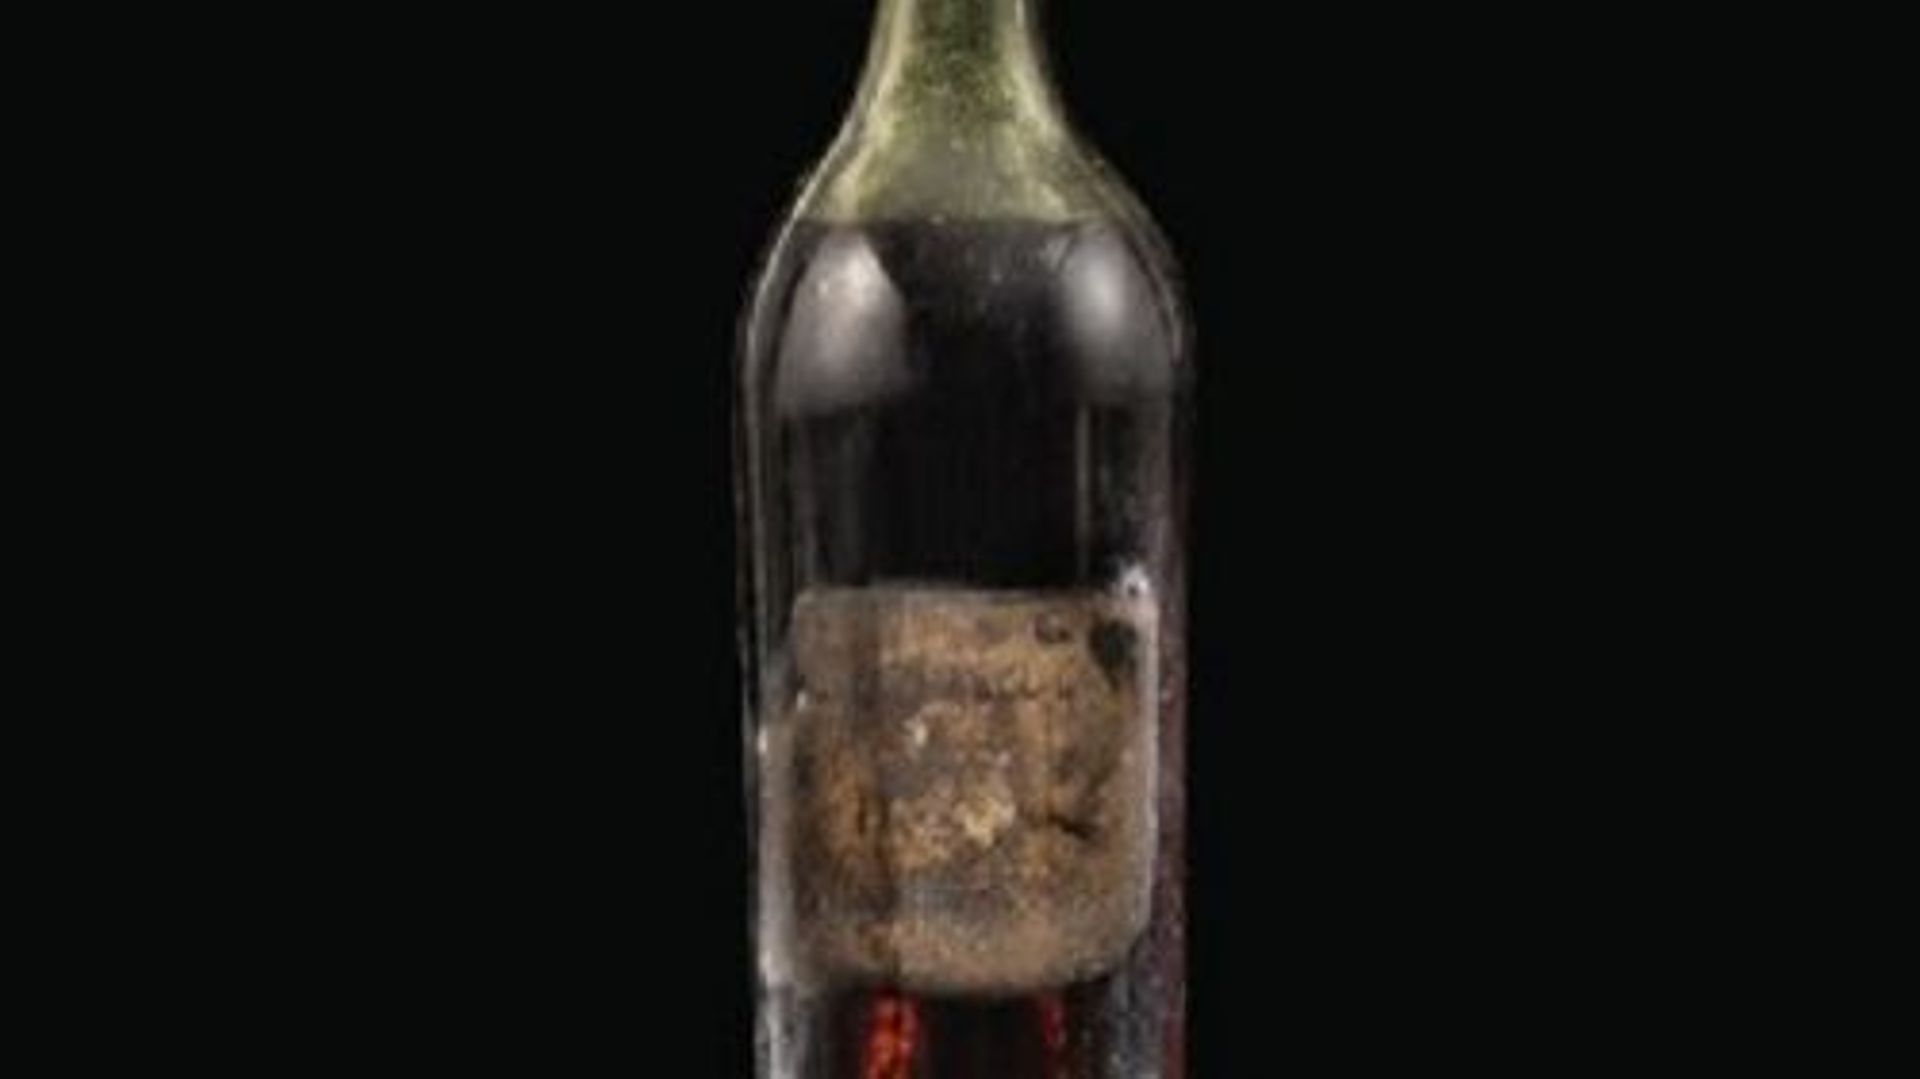 Le plus vieux Cognac jamais vendu aux enchères, le Gautier 1762